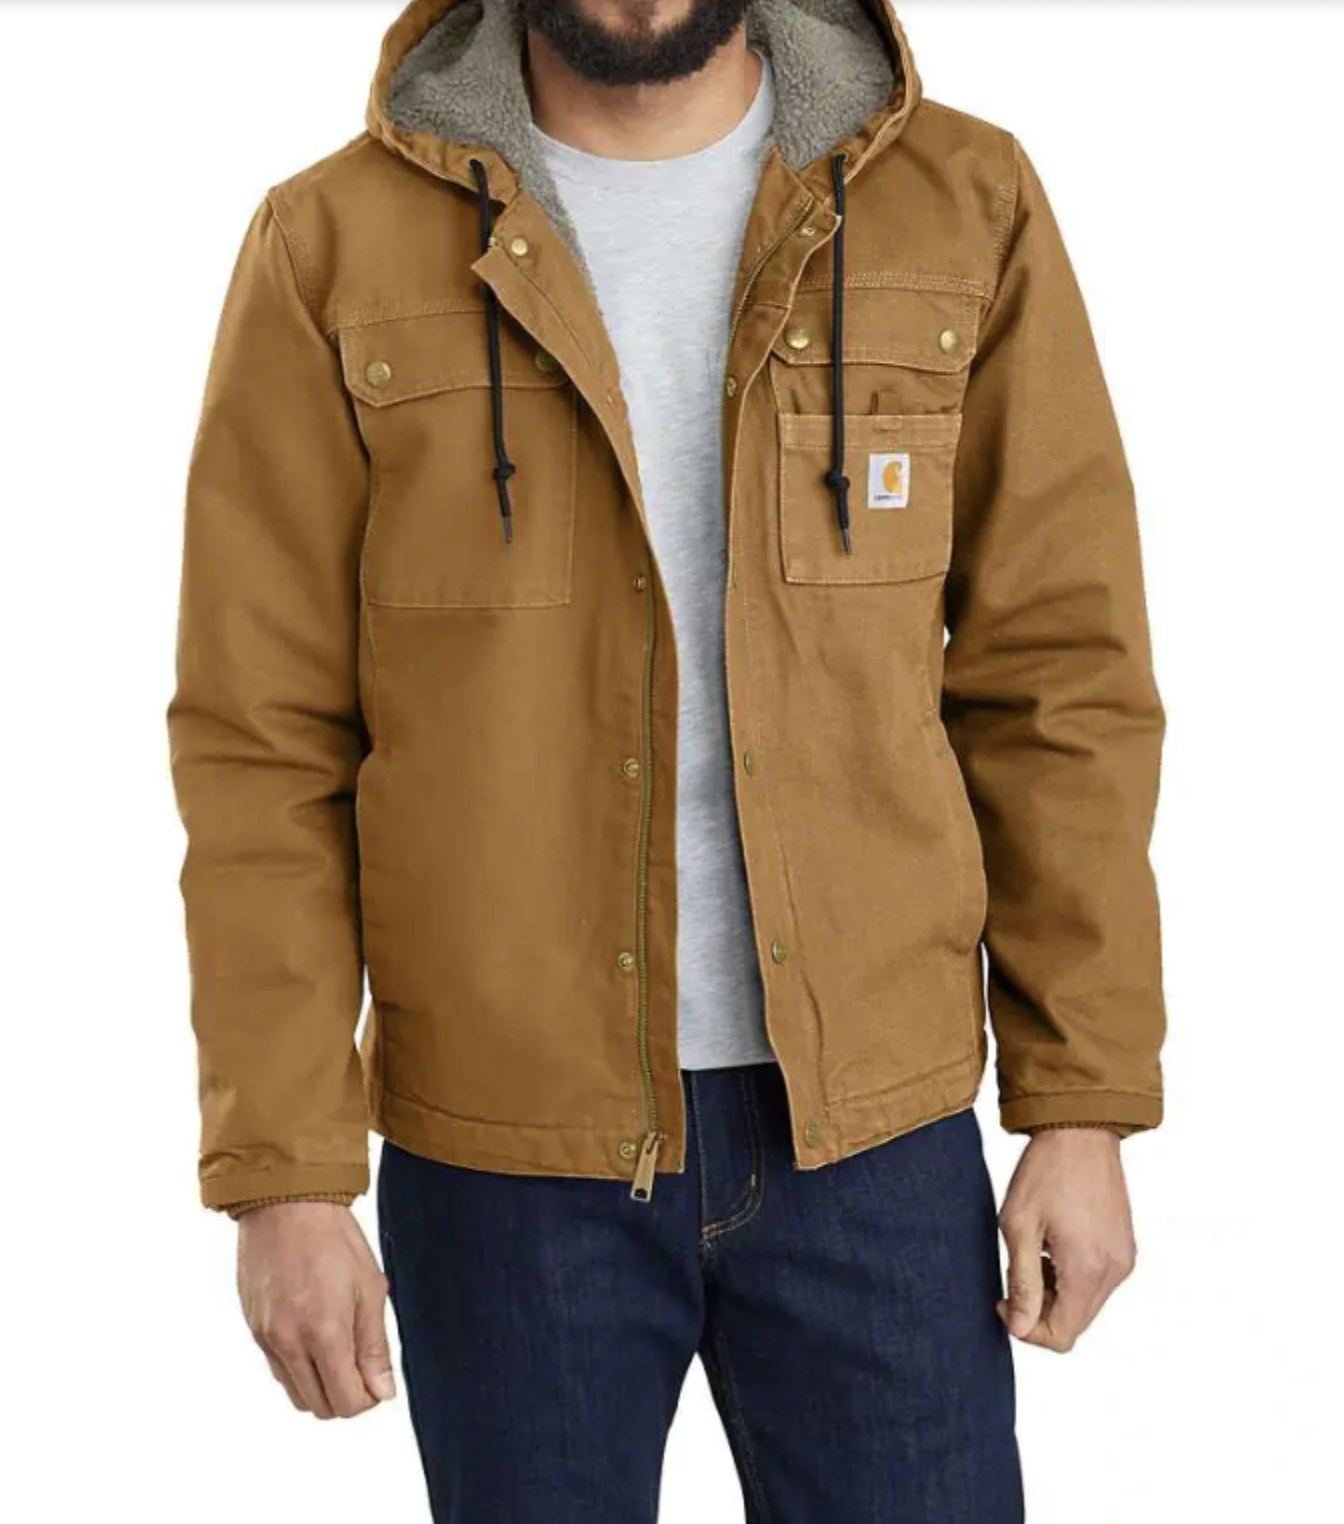 model wearing sherpa-lined jacket in brown